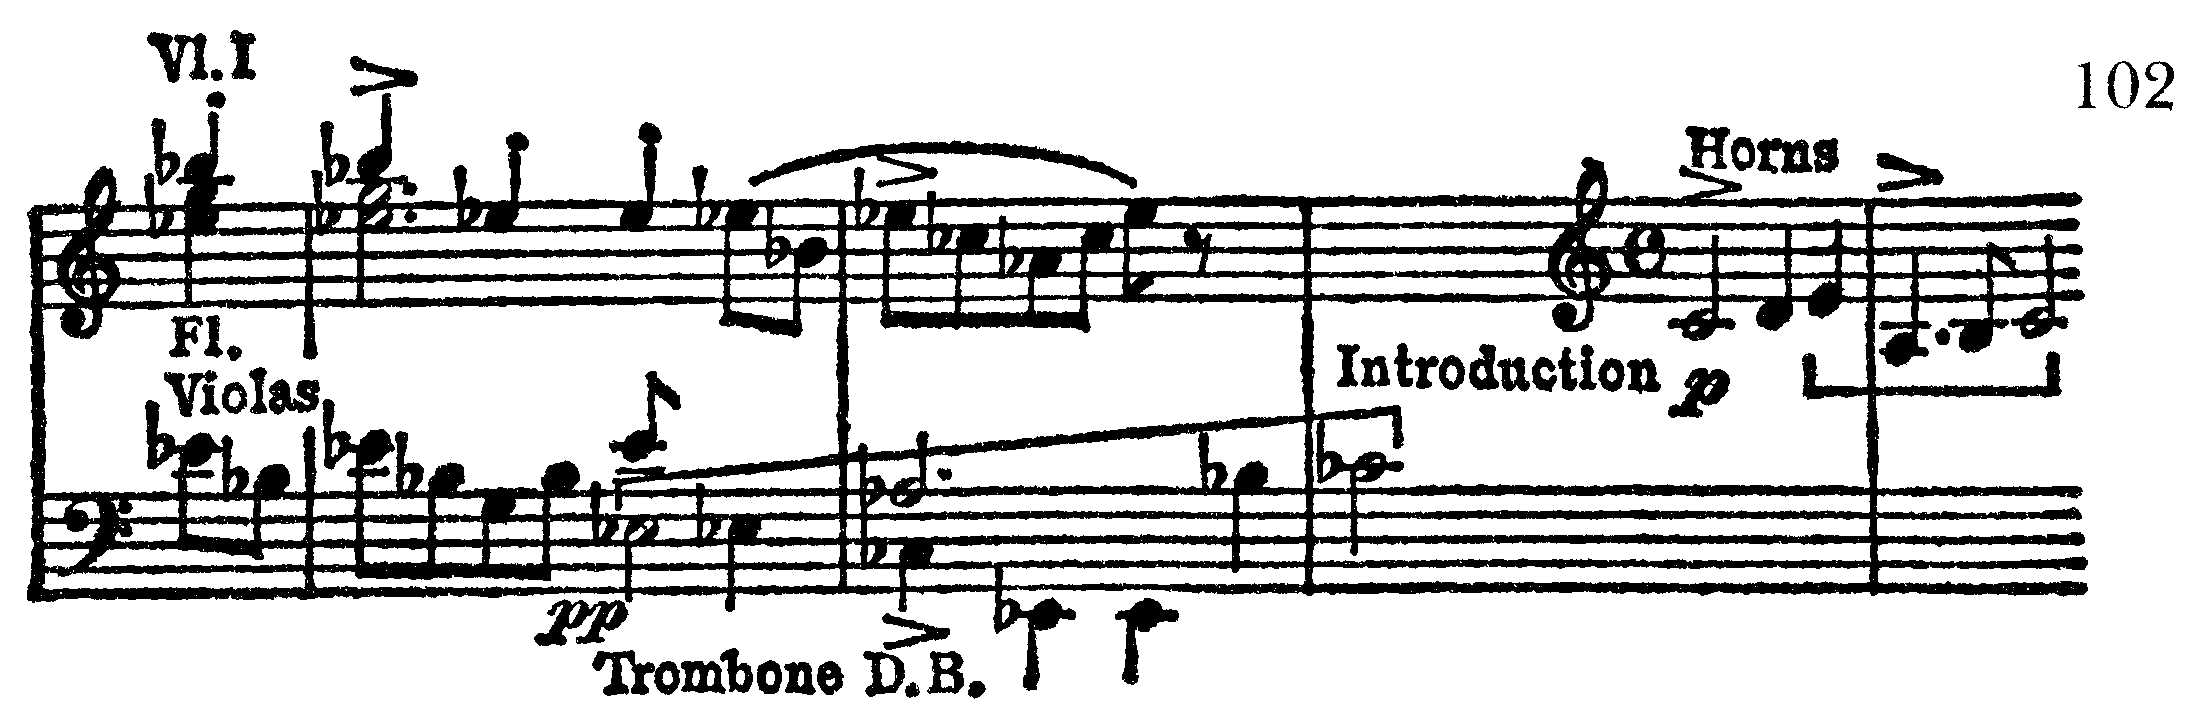 Symfoni, ex 102